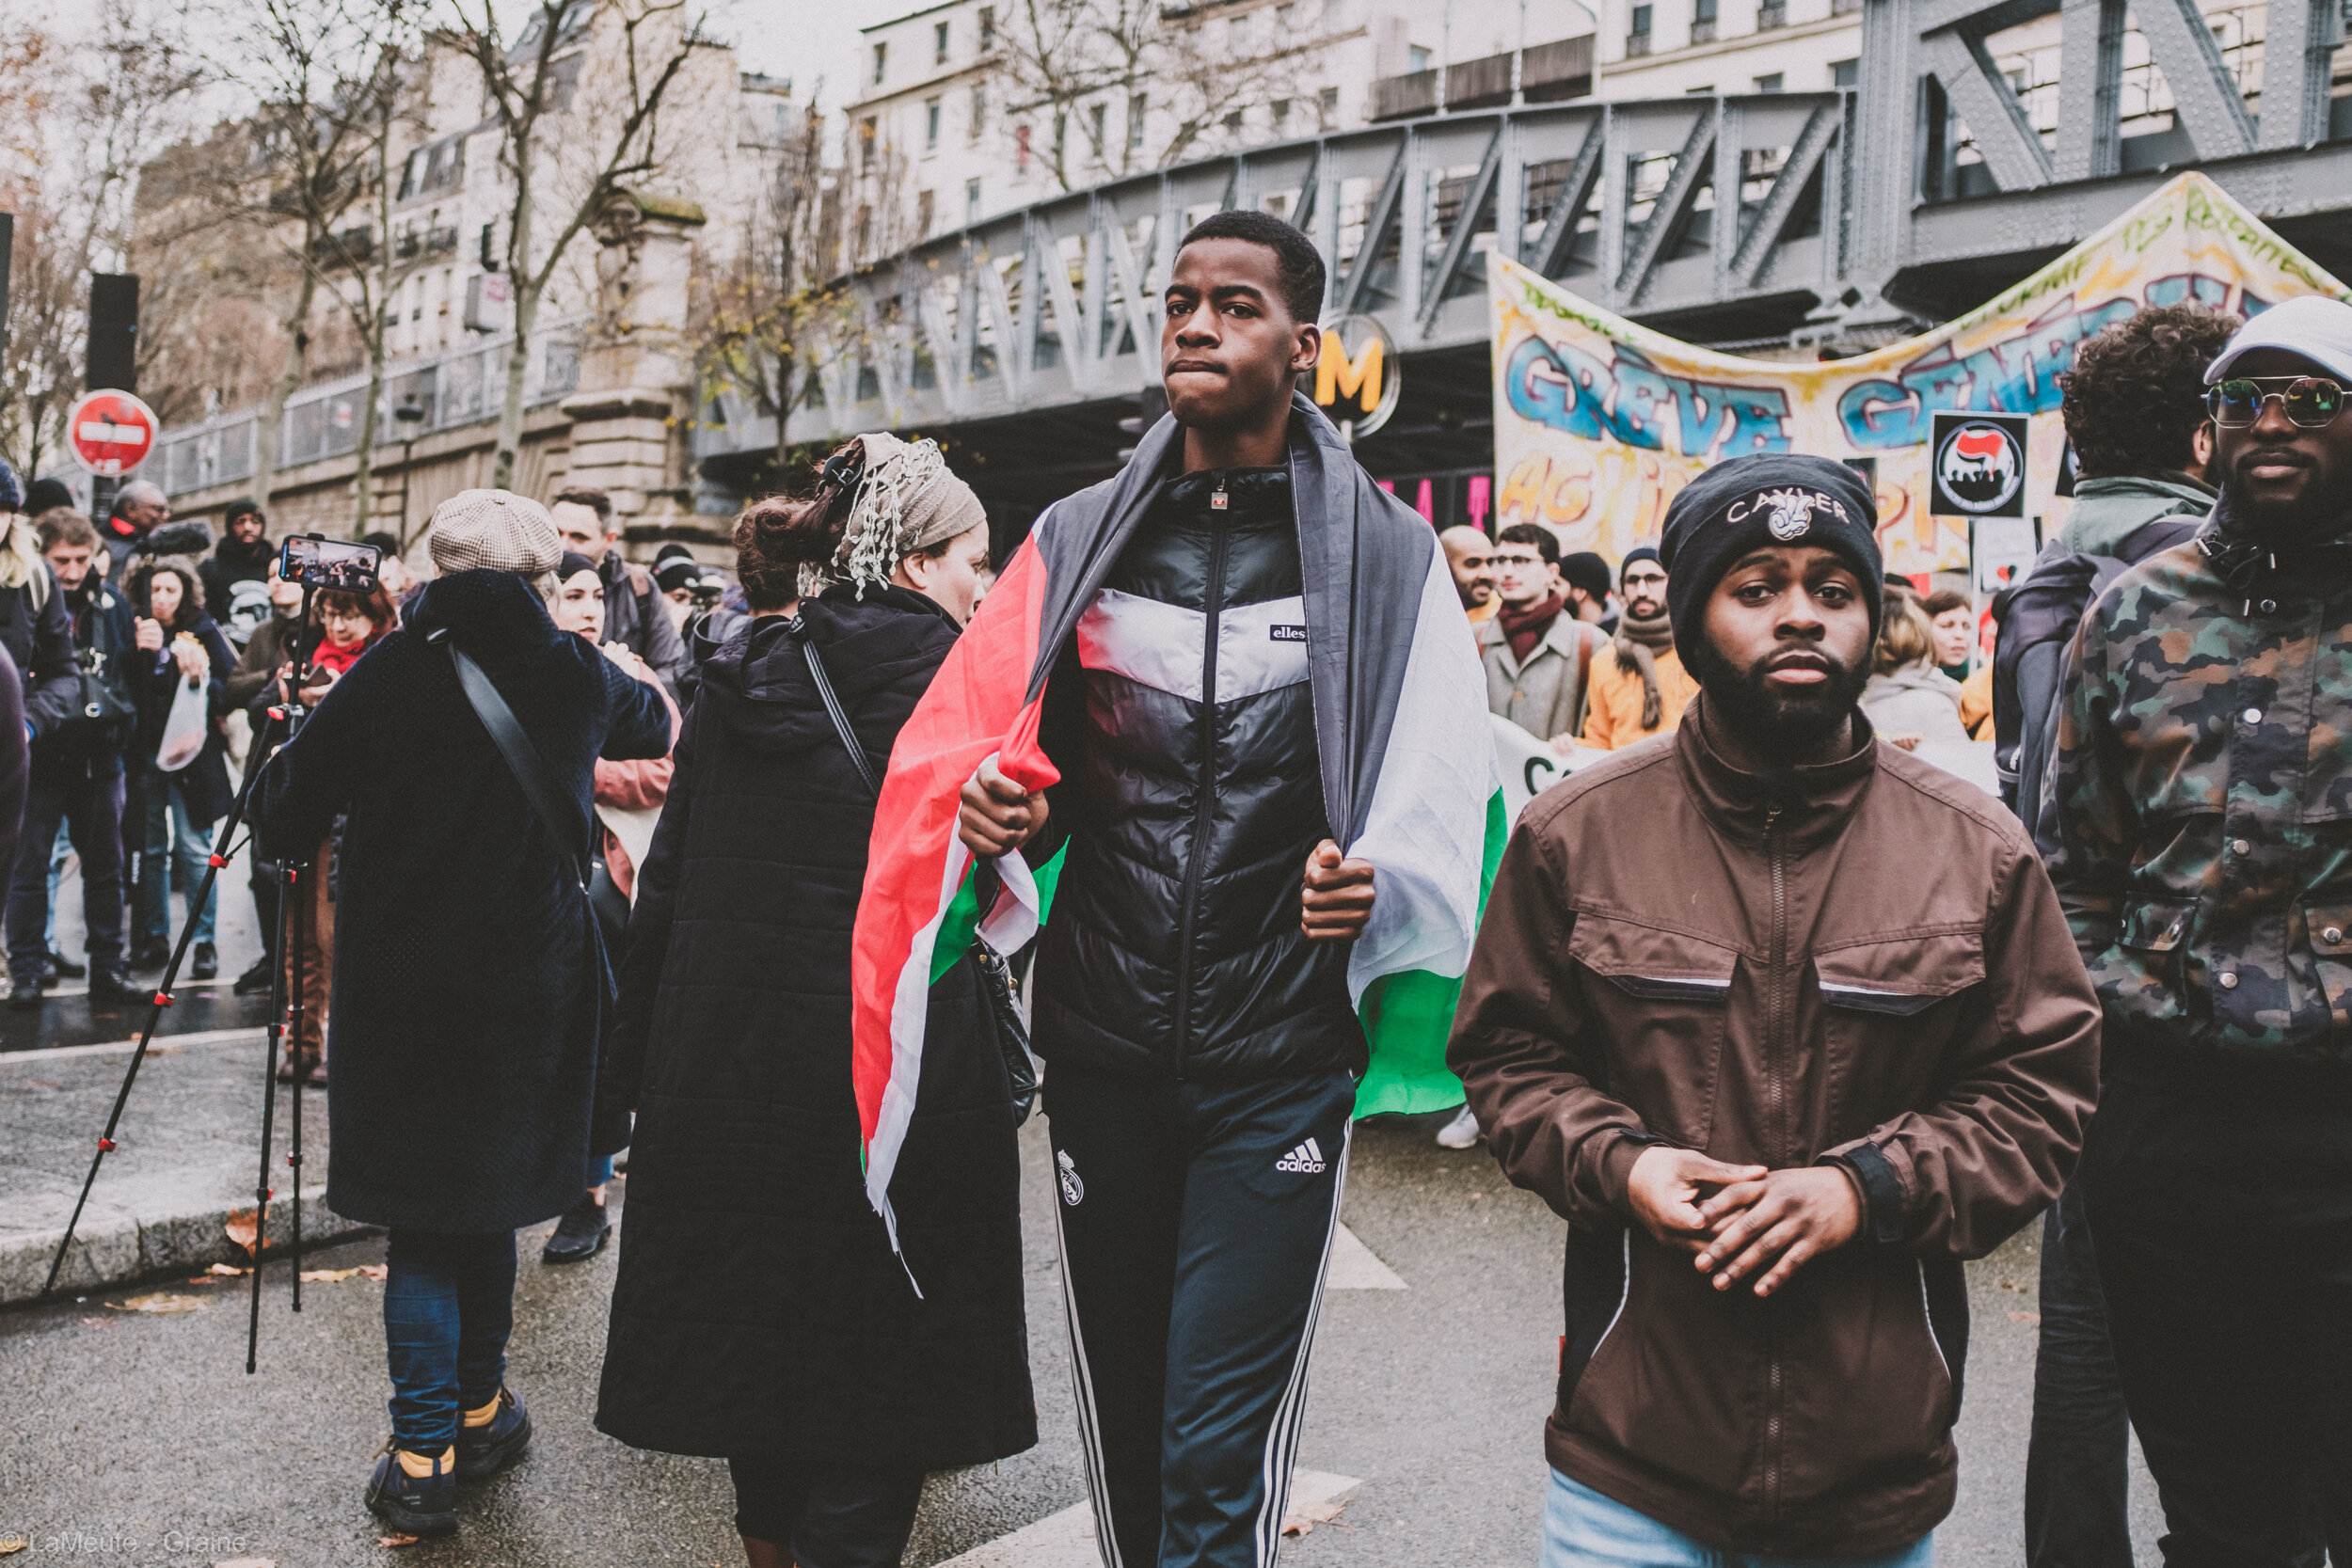  Le drapeau palestinien revient à de nombreuses reprises dans la marche, comme ici sur les épaules de ce Mantois. © LaMeute - Graine 